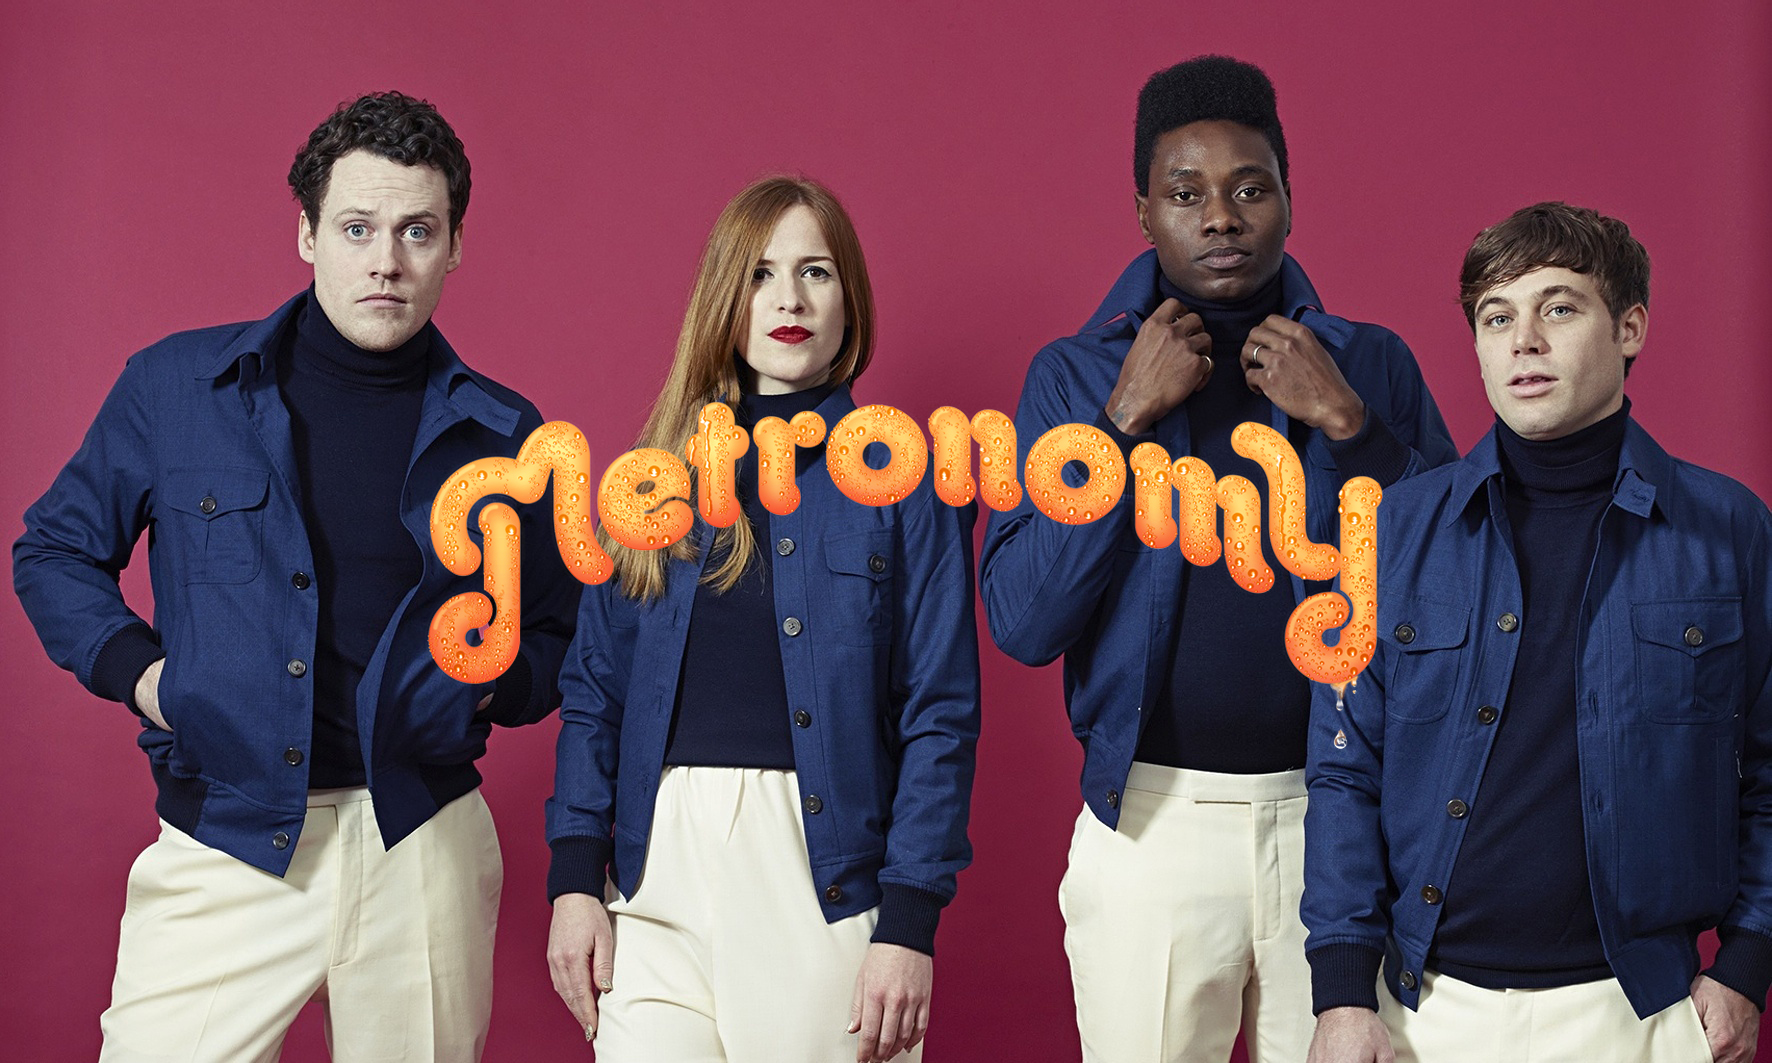 Metronomy comparte su nuevo sencillo ‘Wedding Bells’. Cusica Plus.